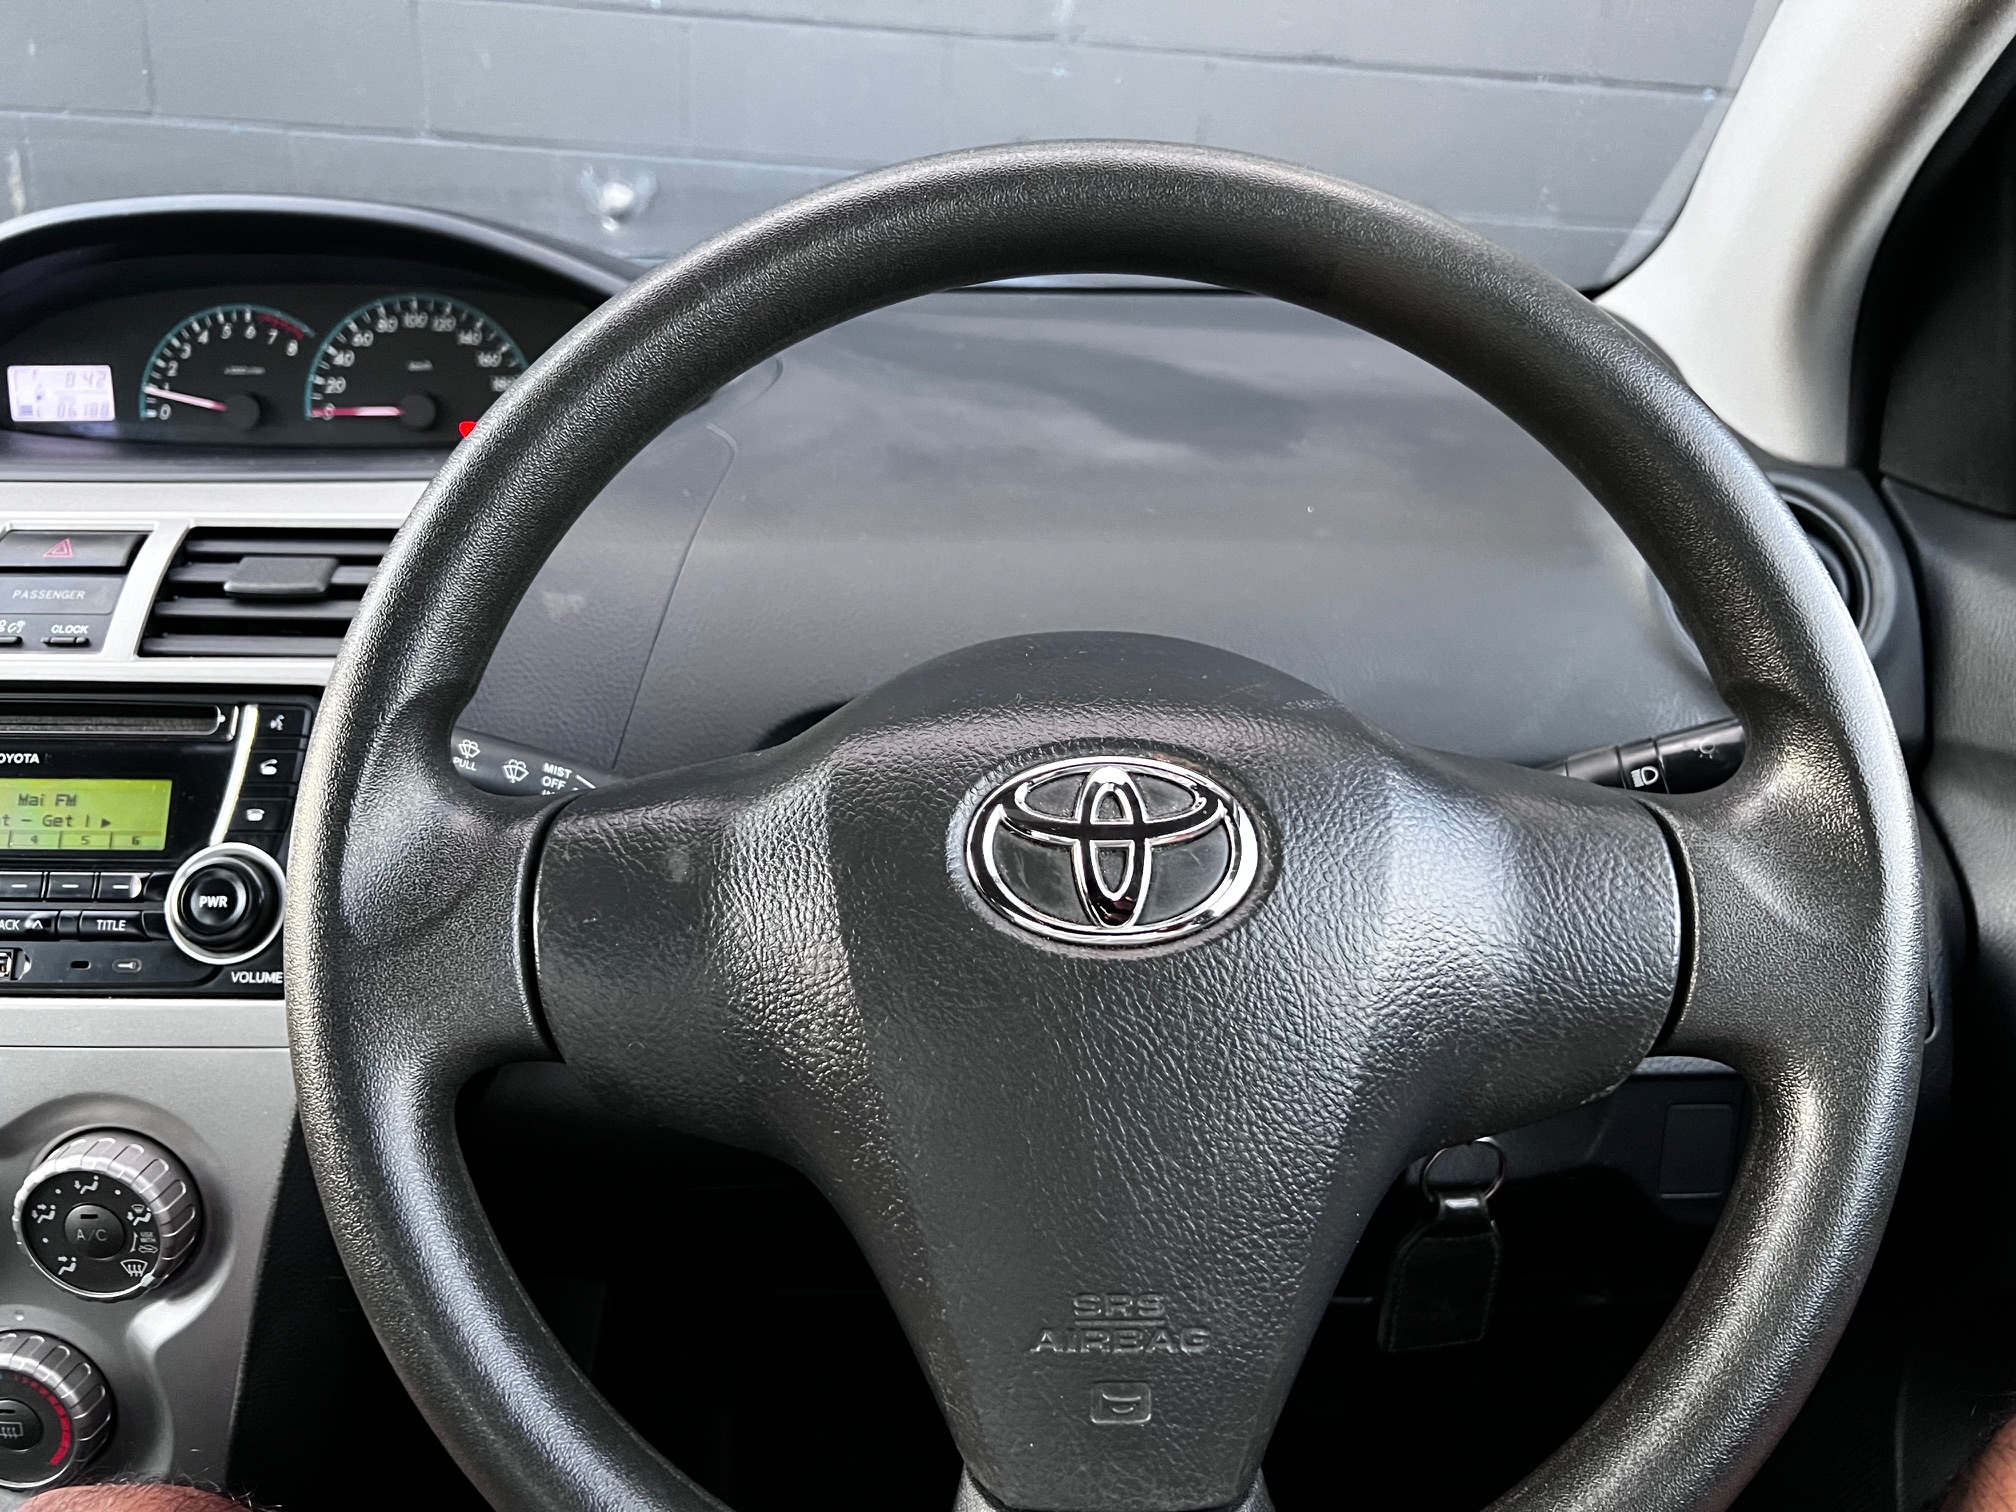 Toyota Yaris 2012 Image 13